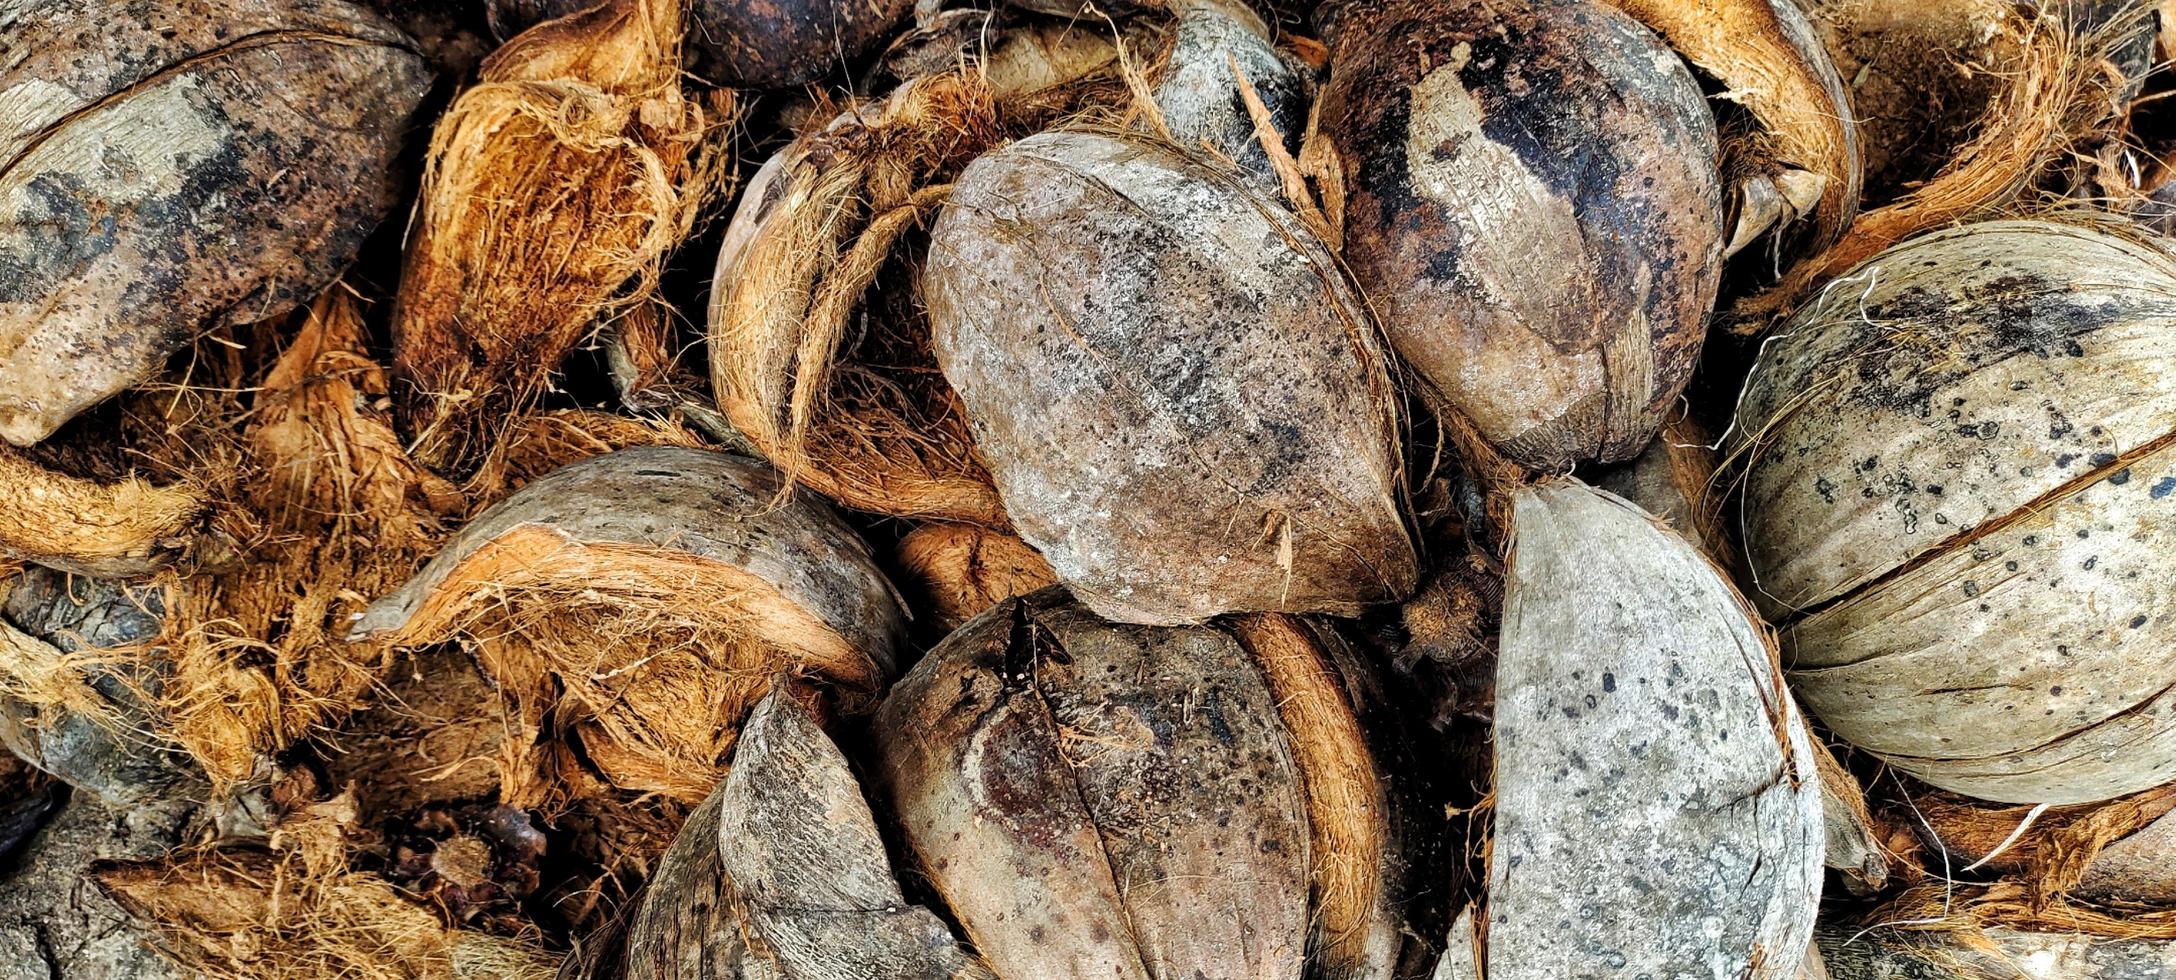 montón de coco seco o cocos nucifera conchas, vista superior. foto